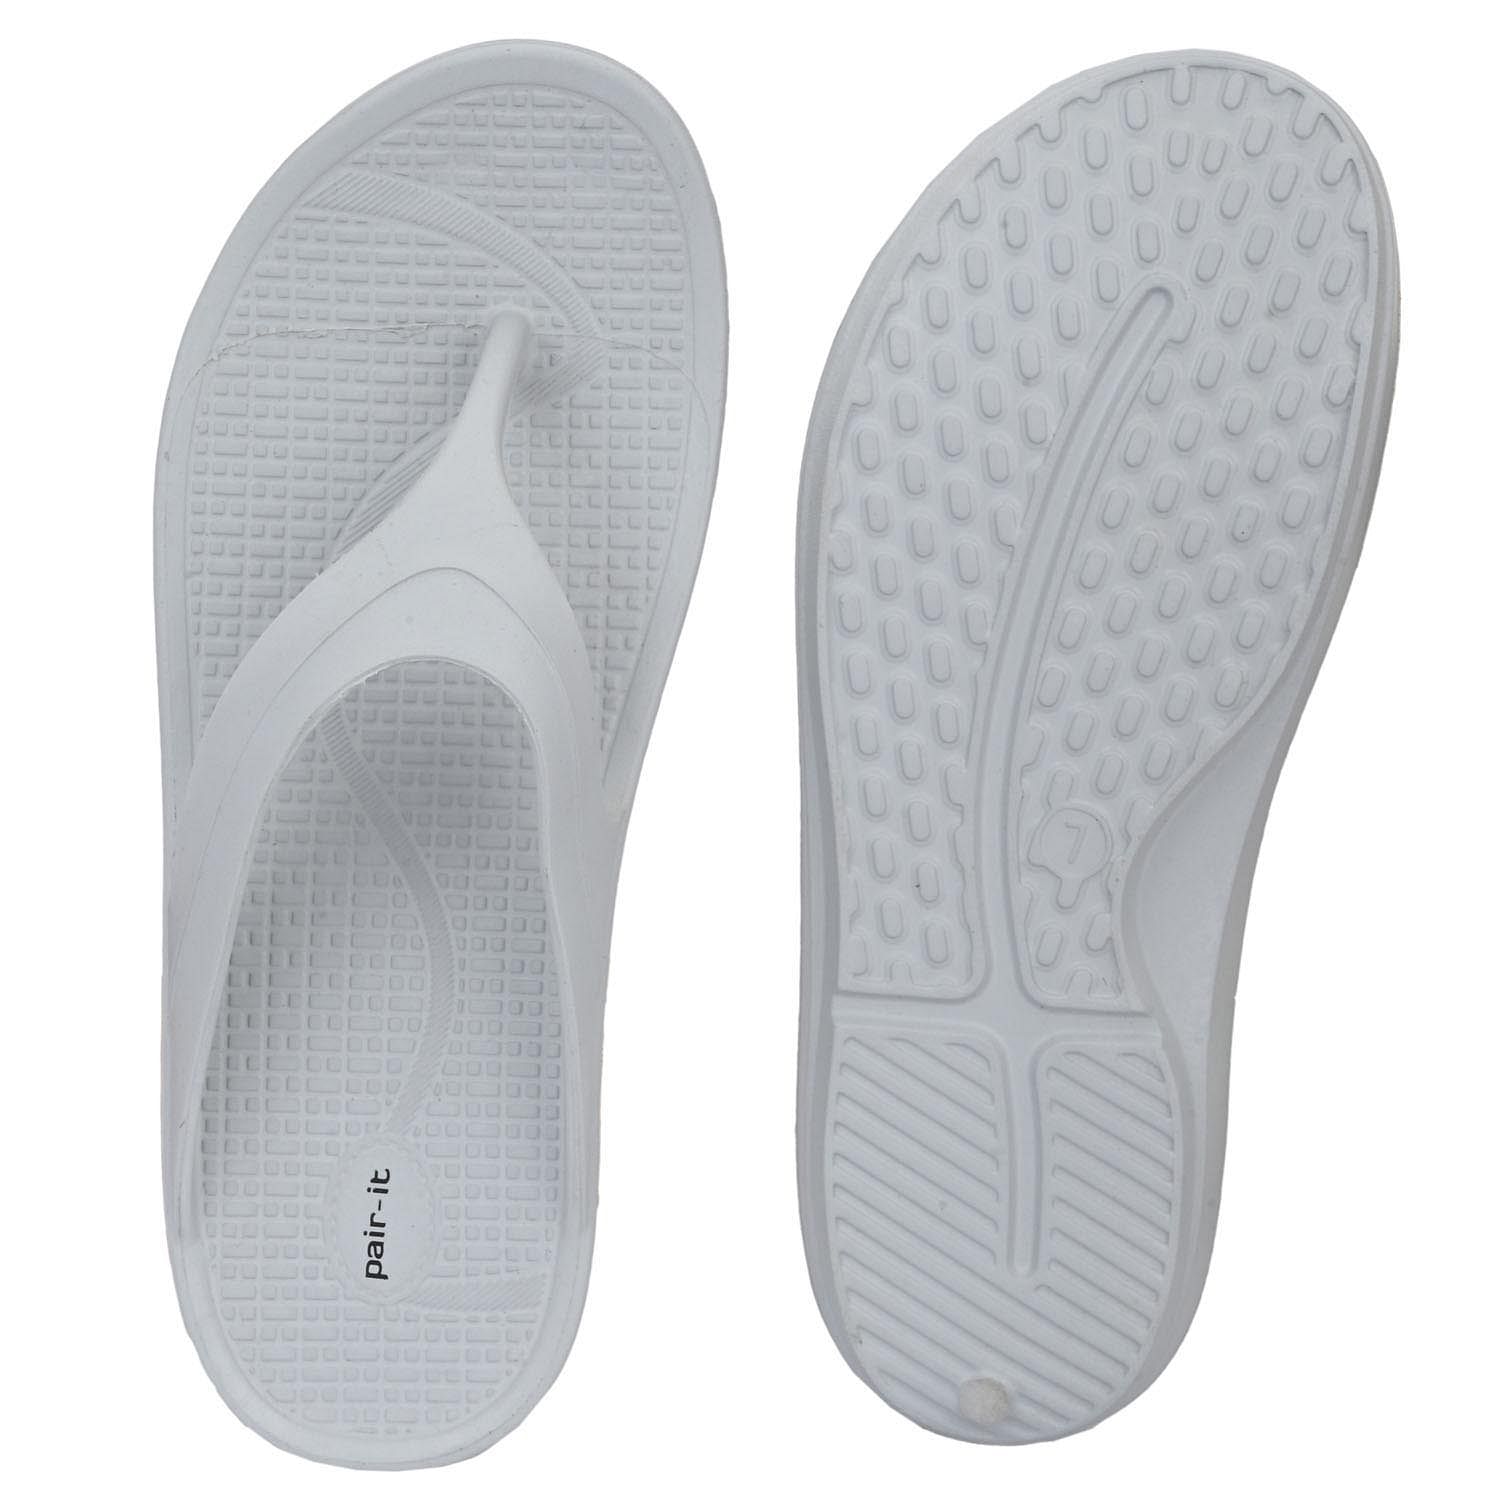 Pair-it Ladies Slippers-304-Grey